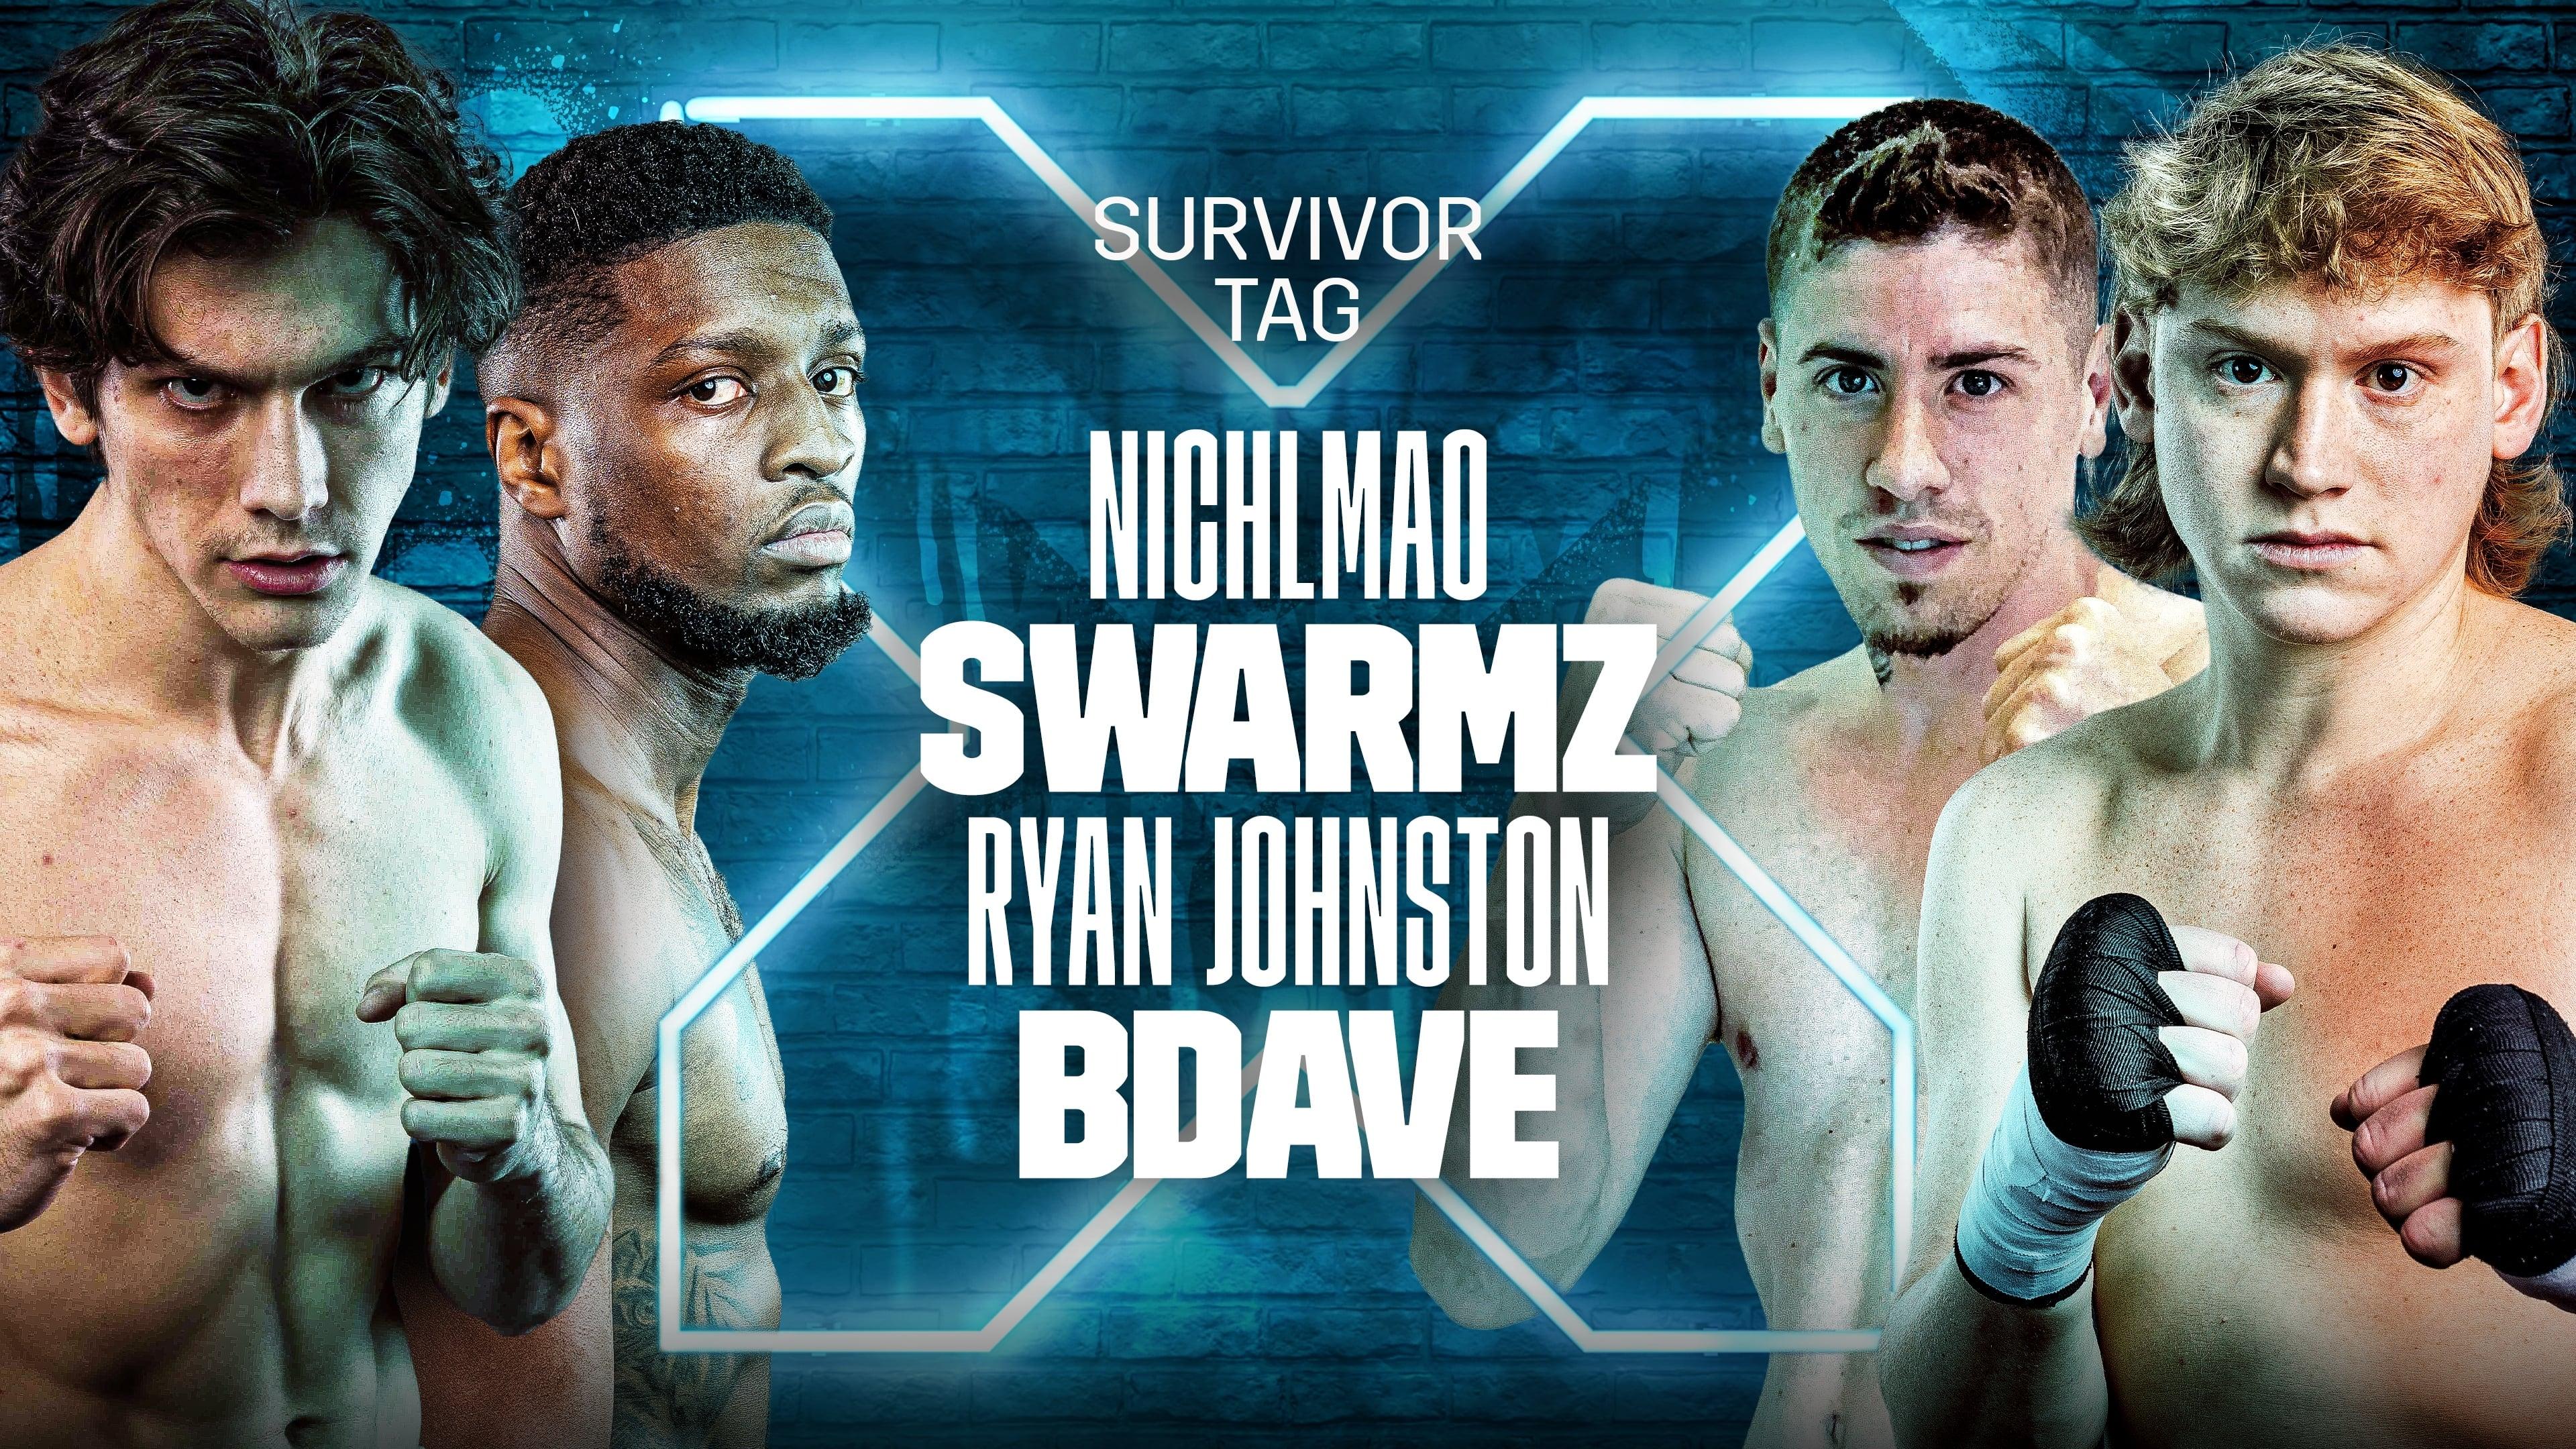 NichLmao vs. Swarmz vs. Ryan Johnston vs. BDave backdrop